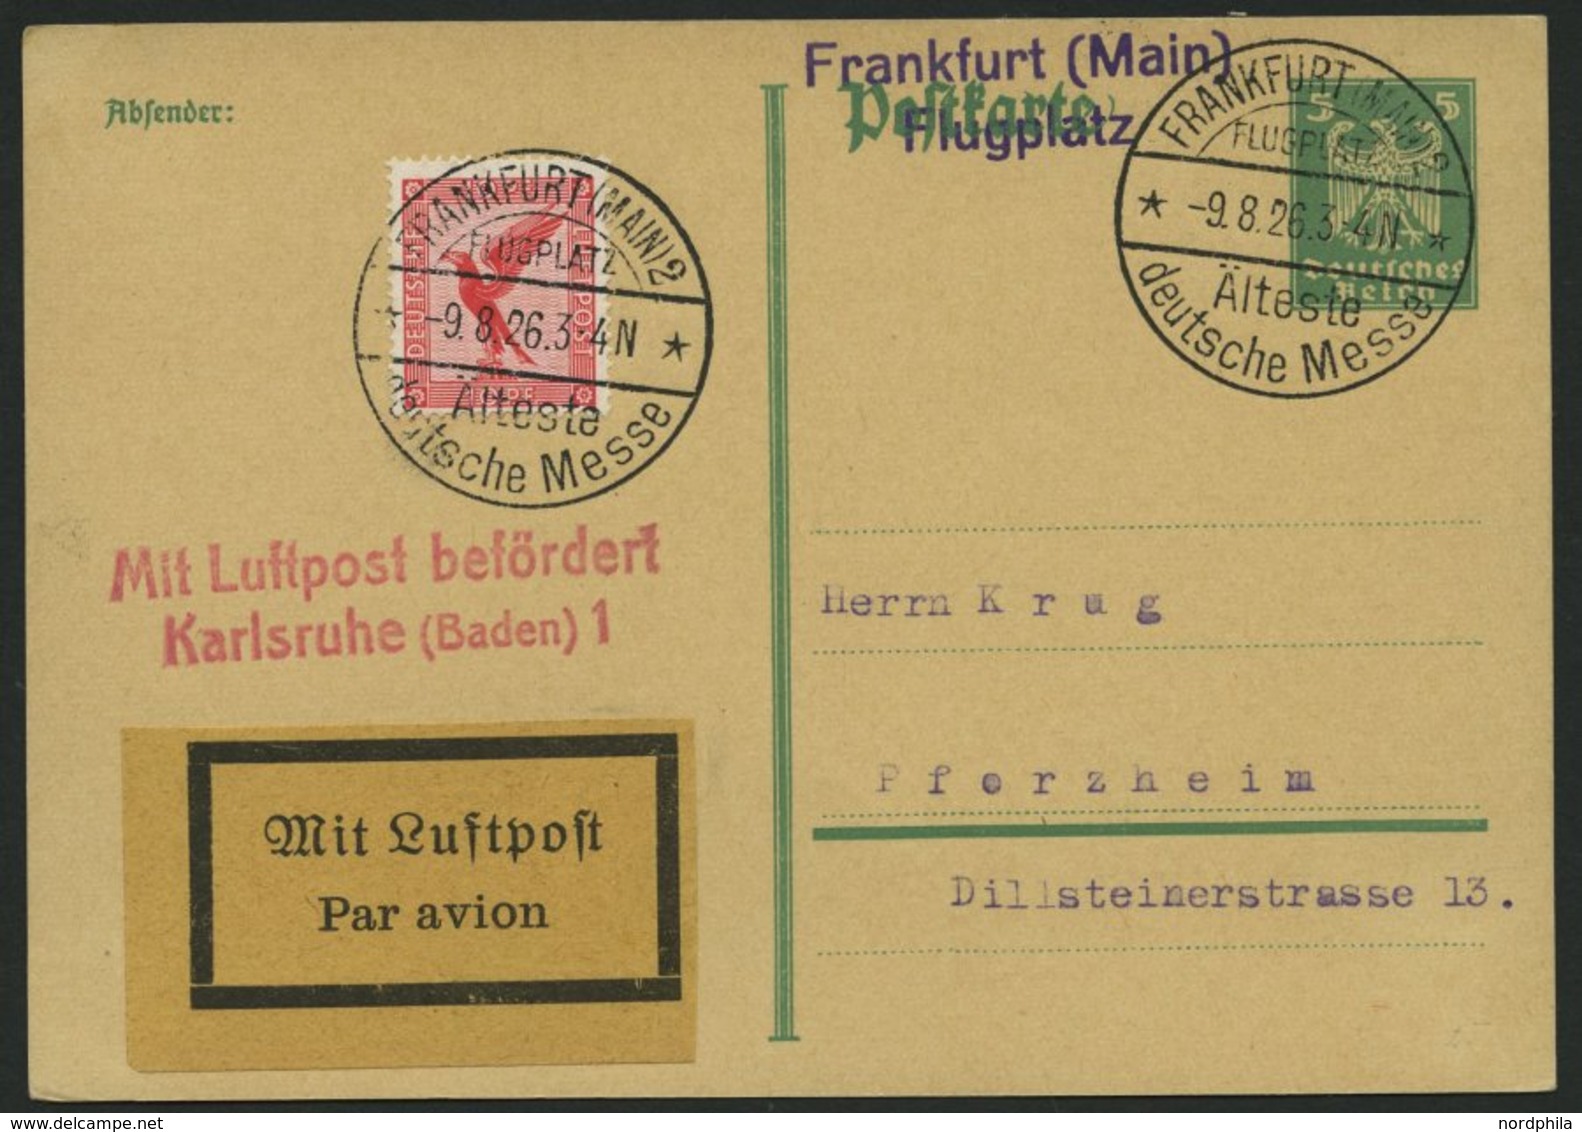 LUFTPOSTBESTÄTIGUNGSSTPL 59-02a BRIEF, KARLSRUHE 1, L2 In Rot, Postkarte Von FRANKFURT (MAIN) 2 Nach Pforzheim, Pracht - Luft- Und Zeppelinpost